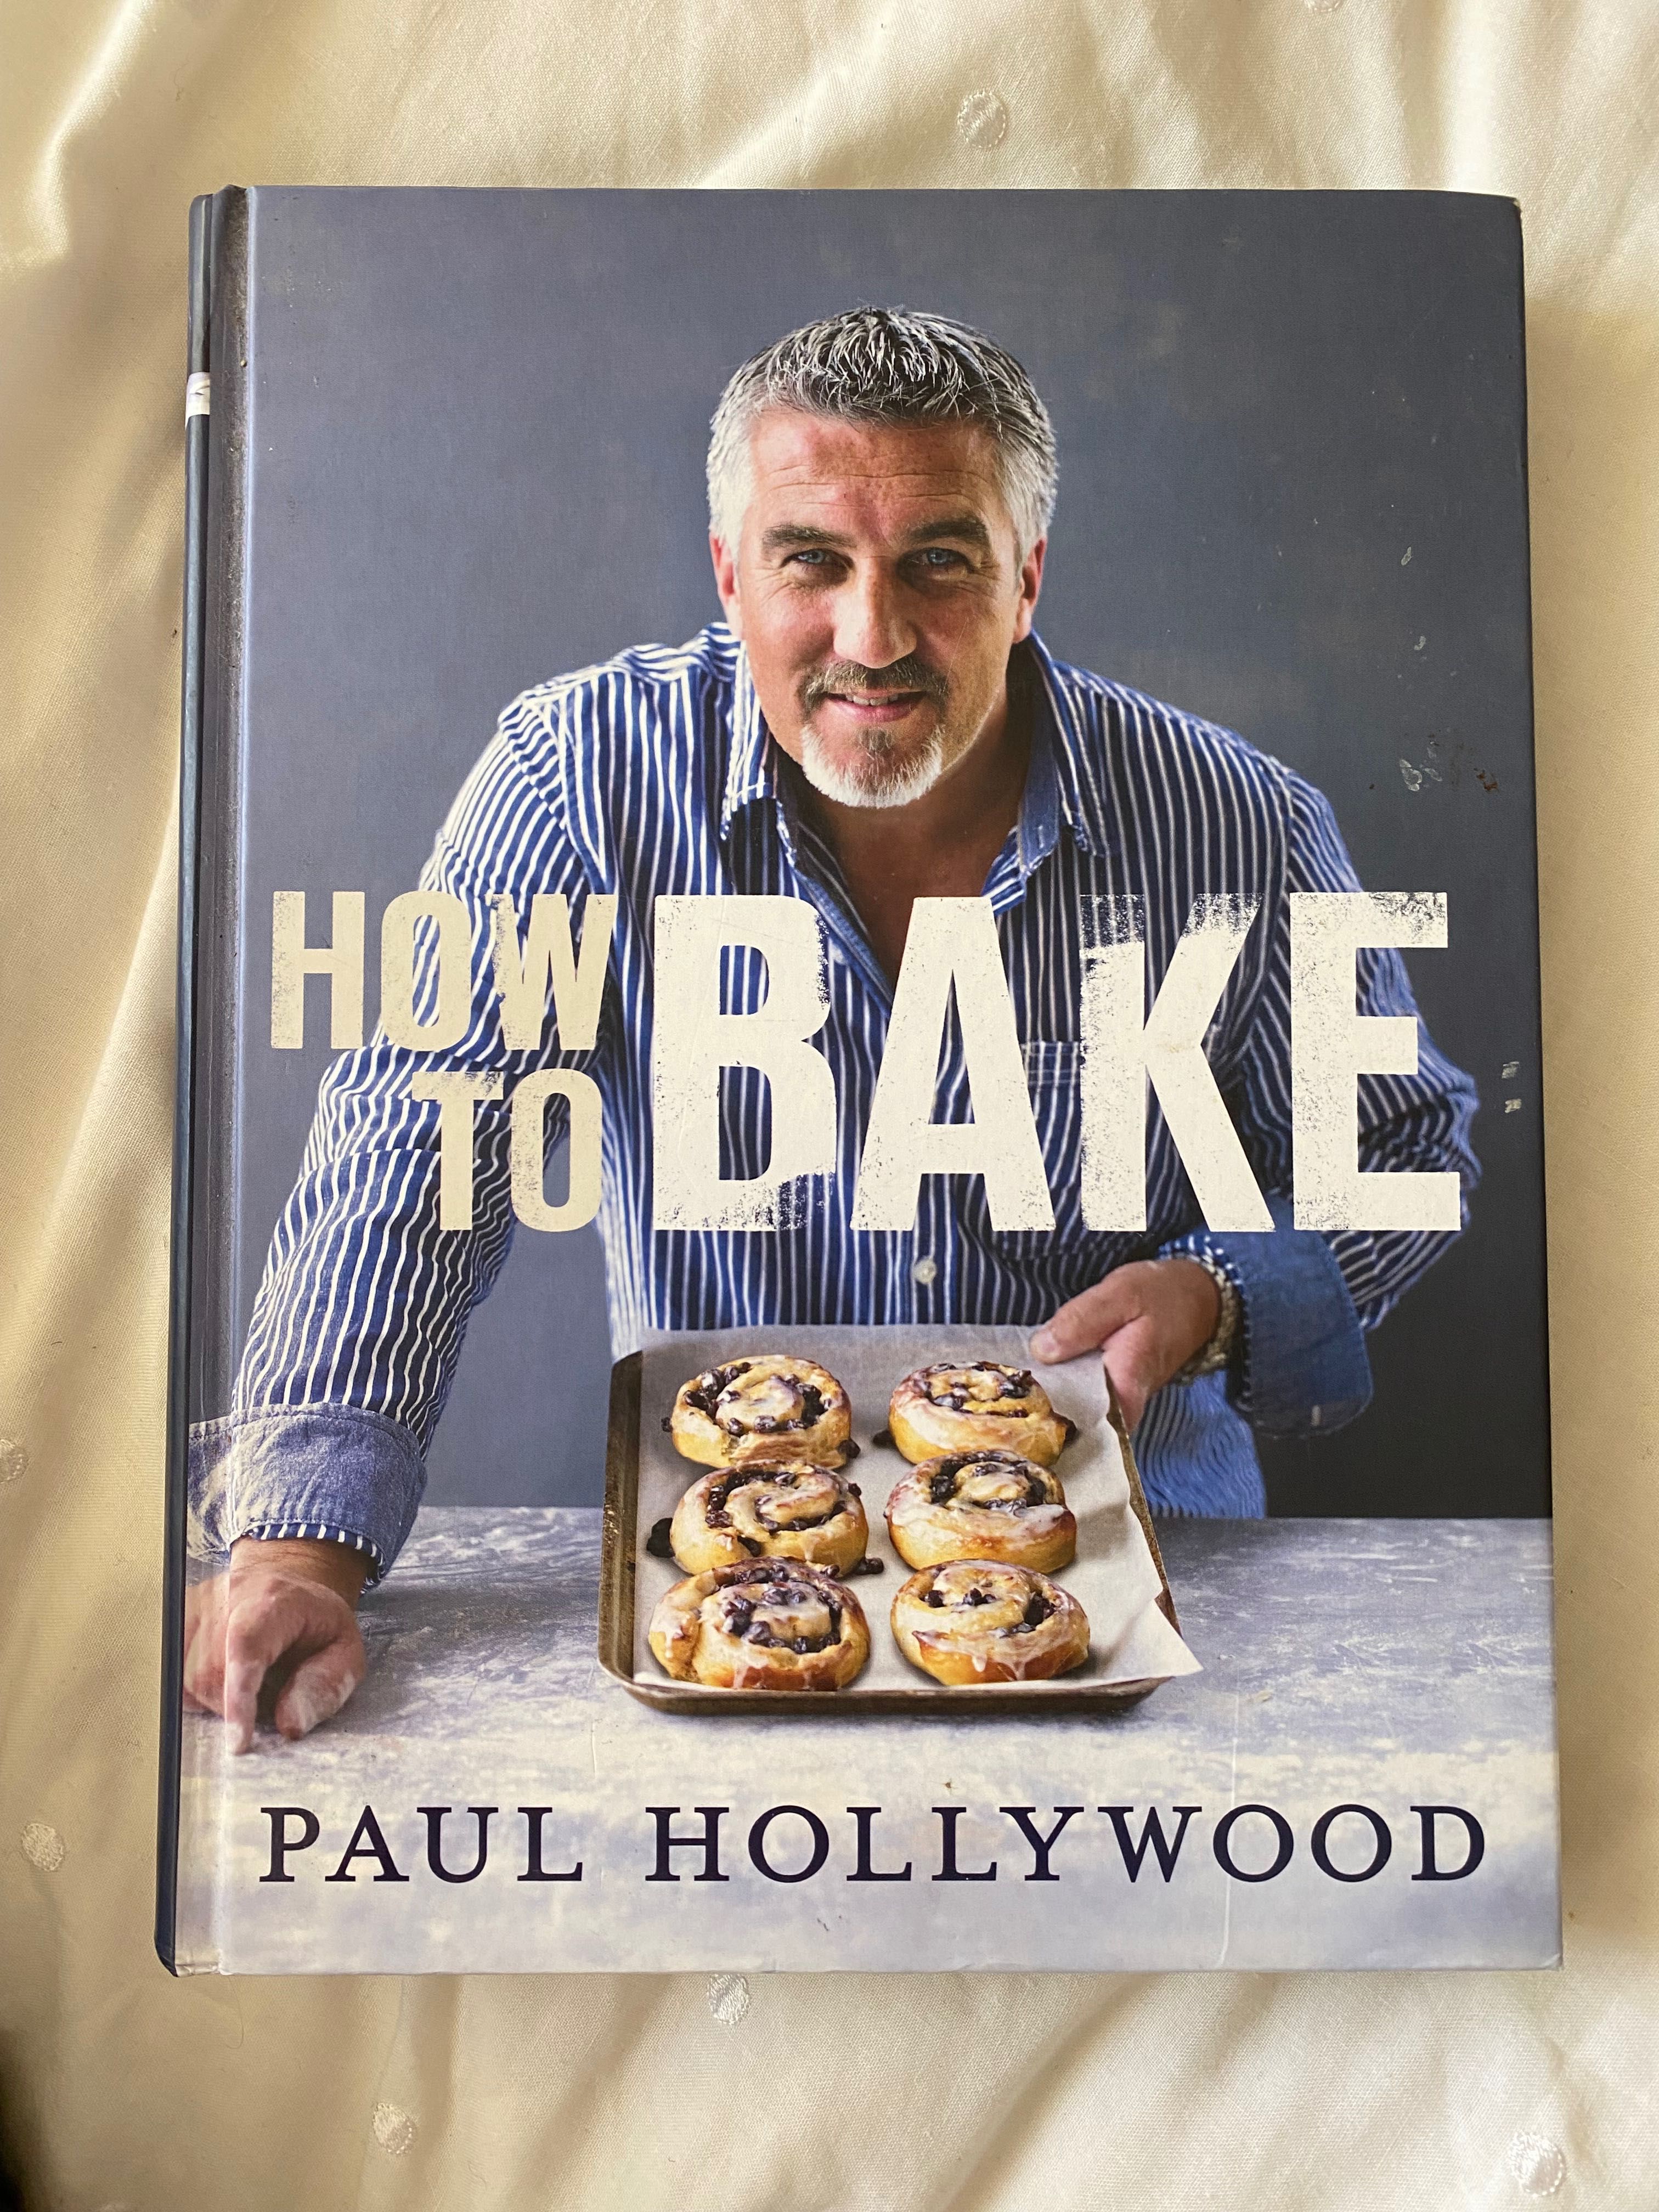 Książka Paul Hollywood “How to bake”